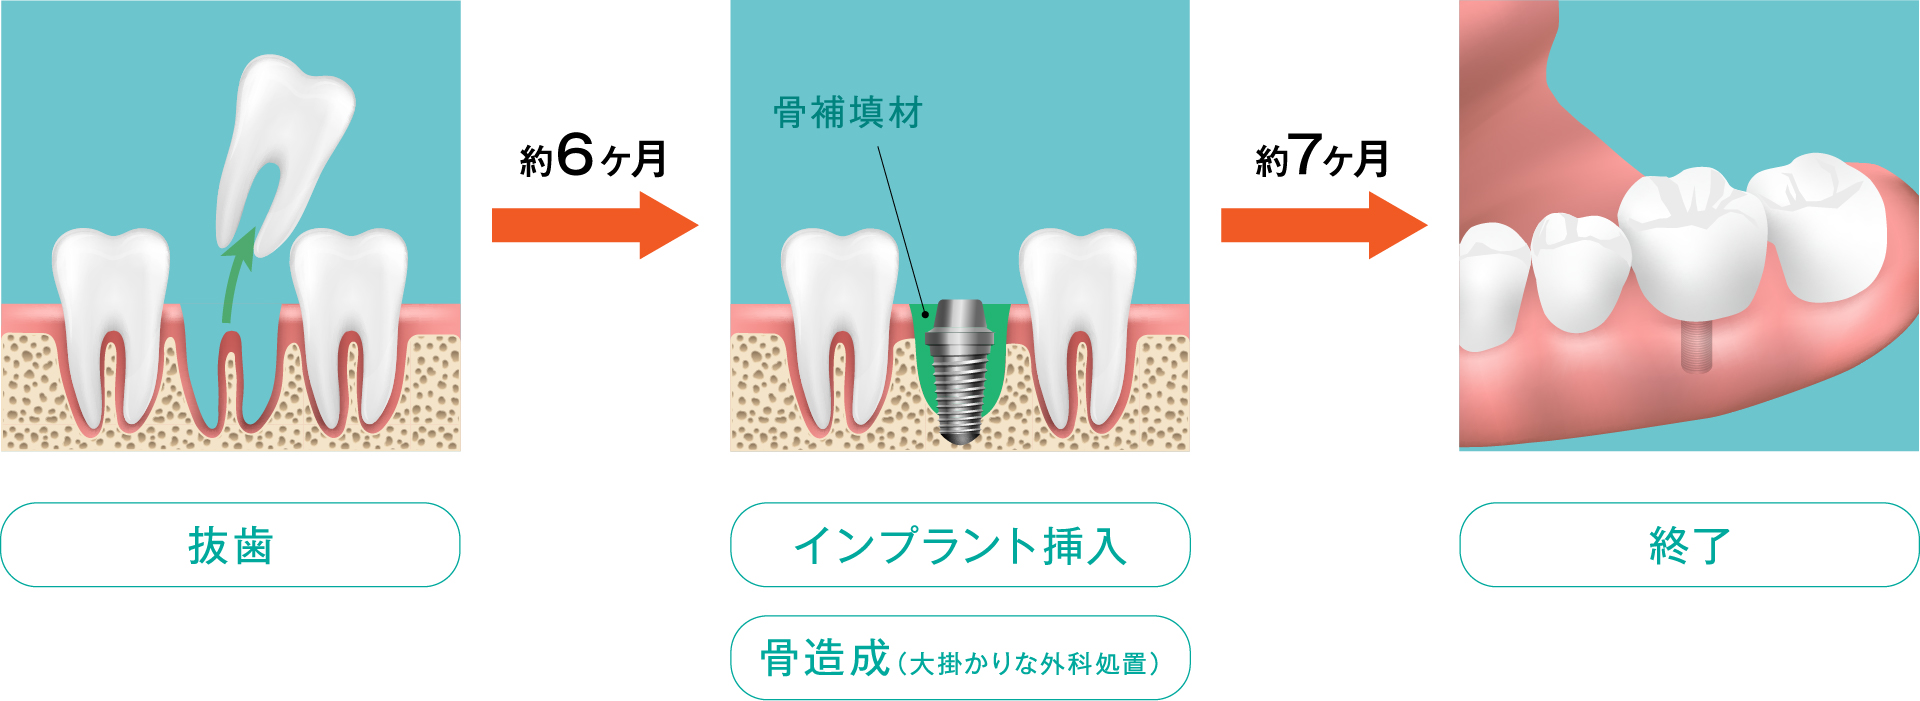 おだ歯科クリニックの通常の流れのインプラント挿入